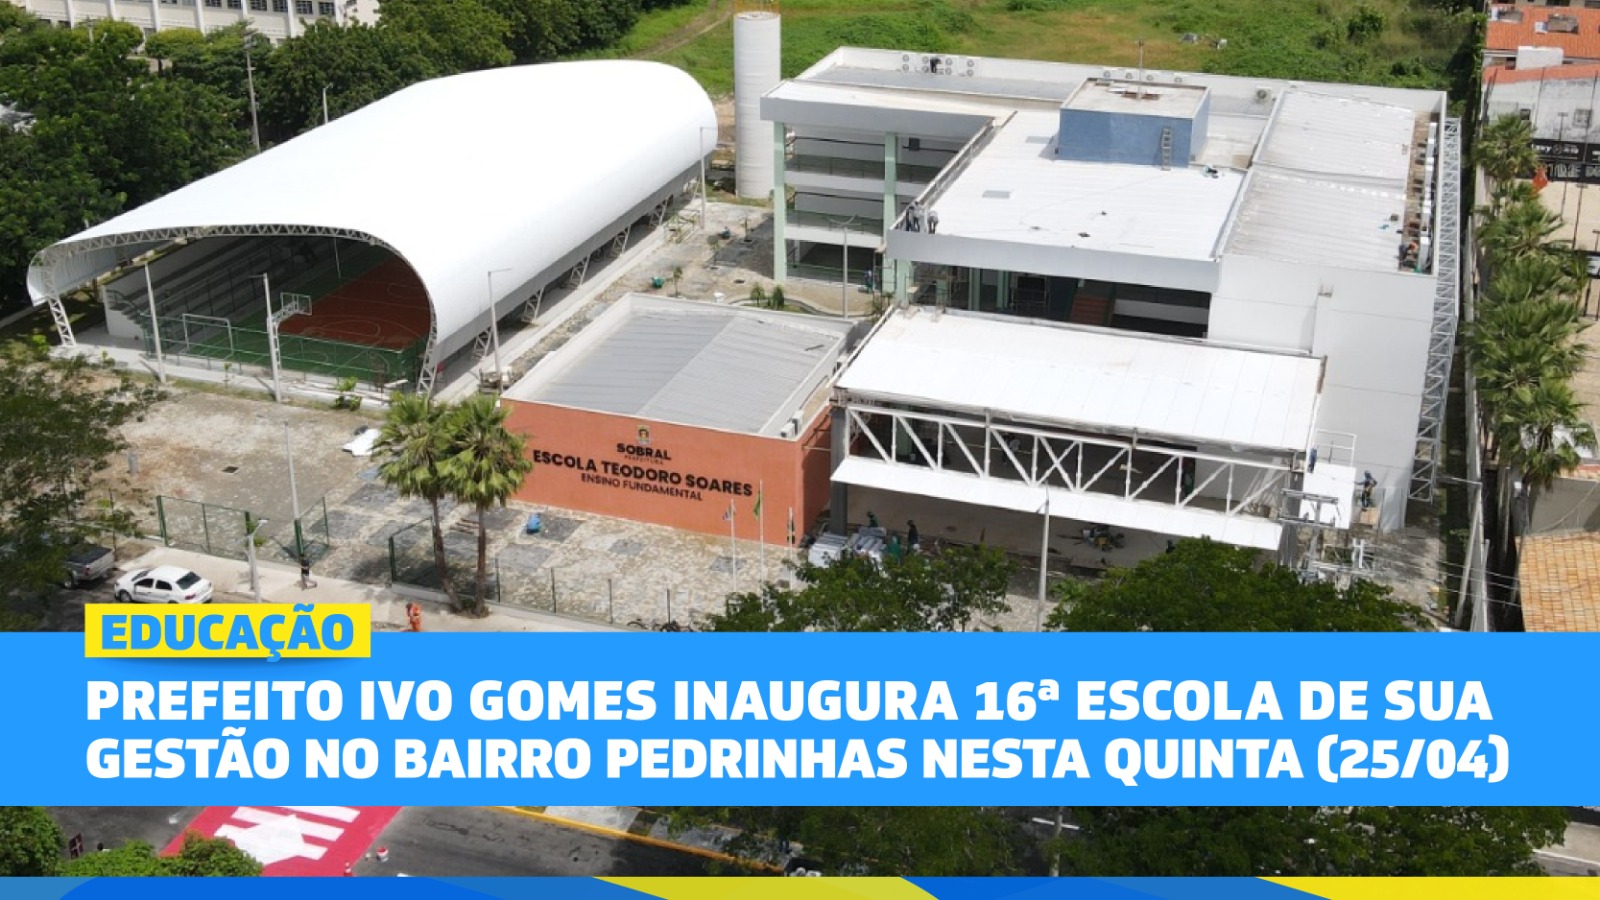 Prefeito Ivo Gomes inaugura 16ª escola de sua gestão no bairro Pedrinhas nest...